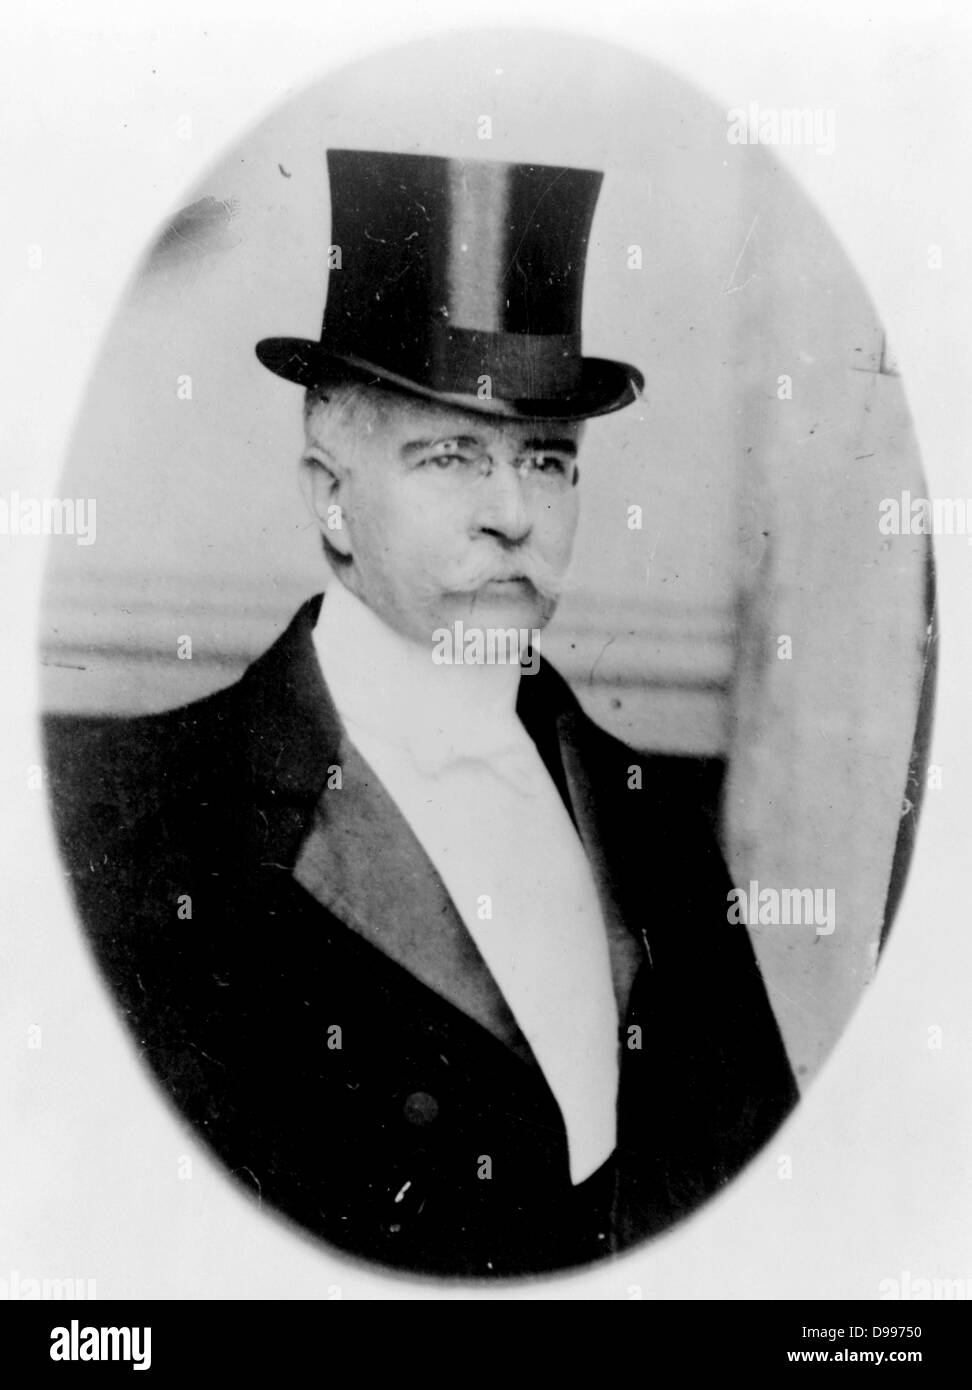 Francisco León de la Barra y Quijano (Querétaro, 16 Giugno 1863 - 23 settembre 1939 a Biarritz, Francia) è stato un politico messicano figura e diplomatico che ha servito come Presidente ad interim del Messico dal 25 maggio al 6 novembre 1911. Foto Stock